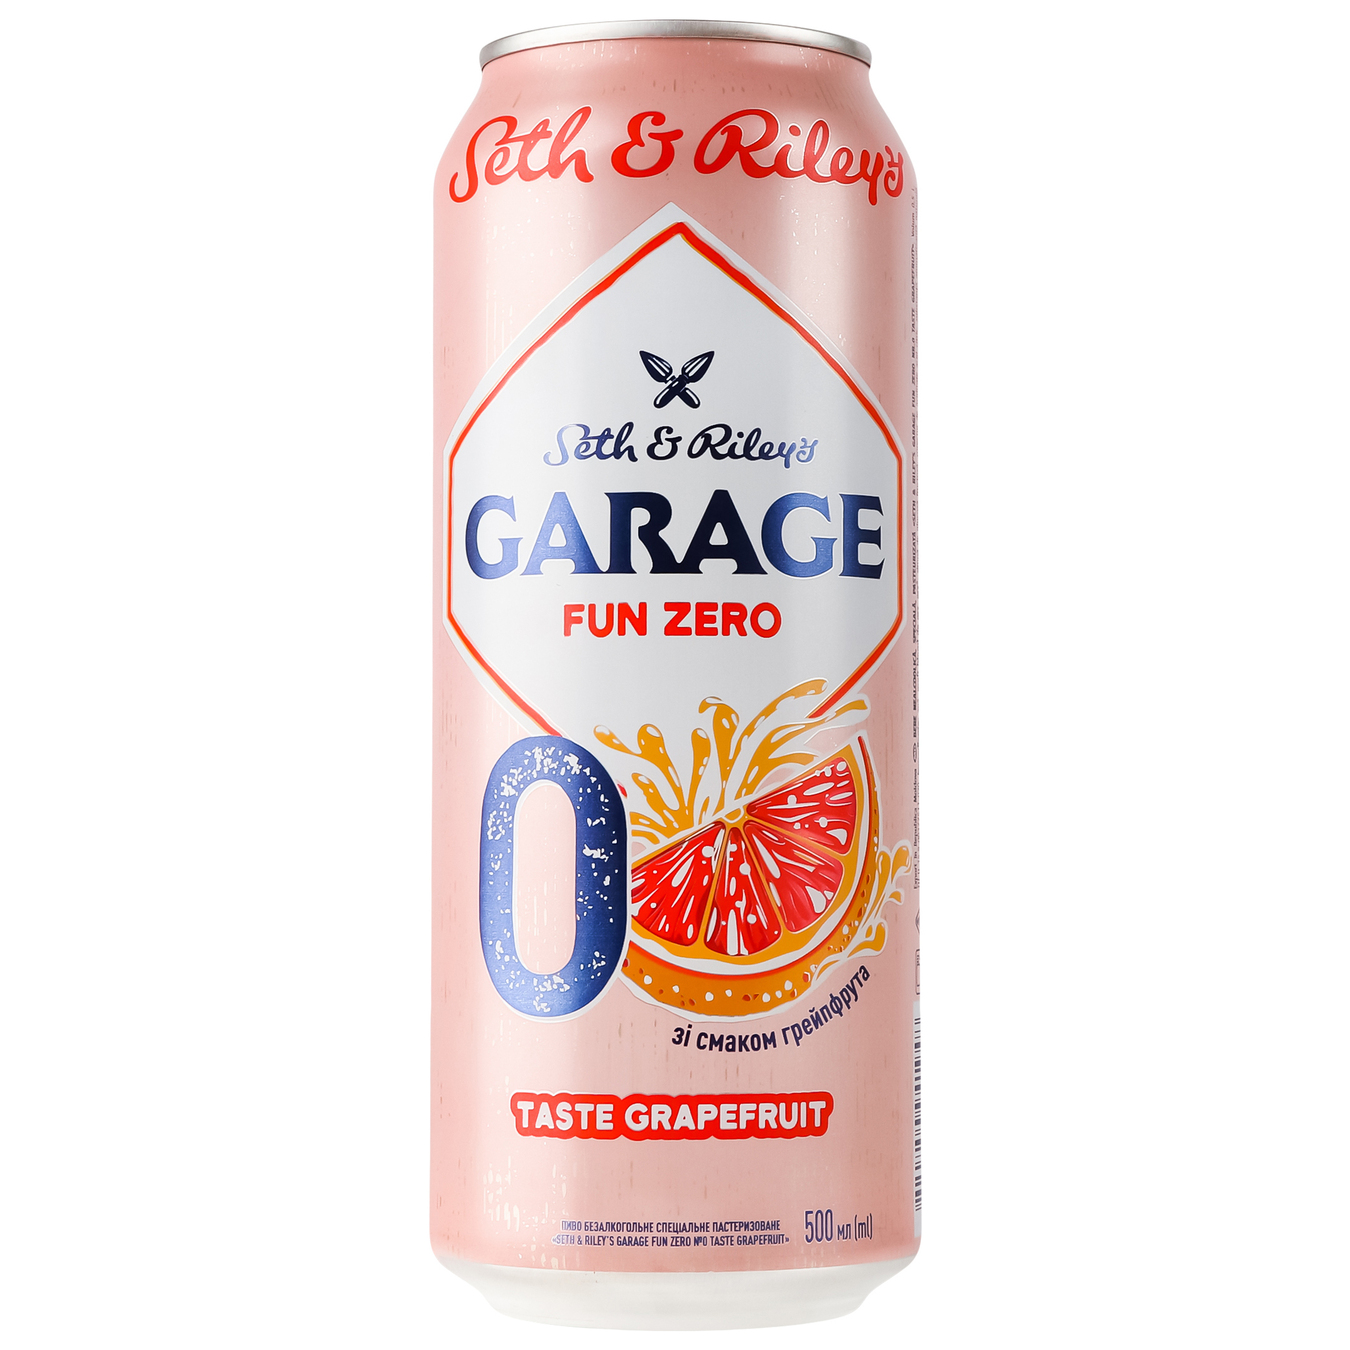 Пиво безалкогольное Seth&Riley's Garage fun zero №0 taste Grapefruit 0,5л